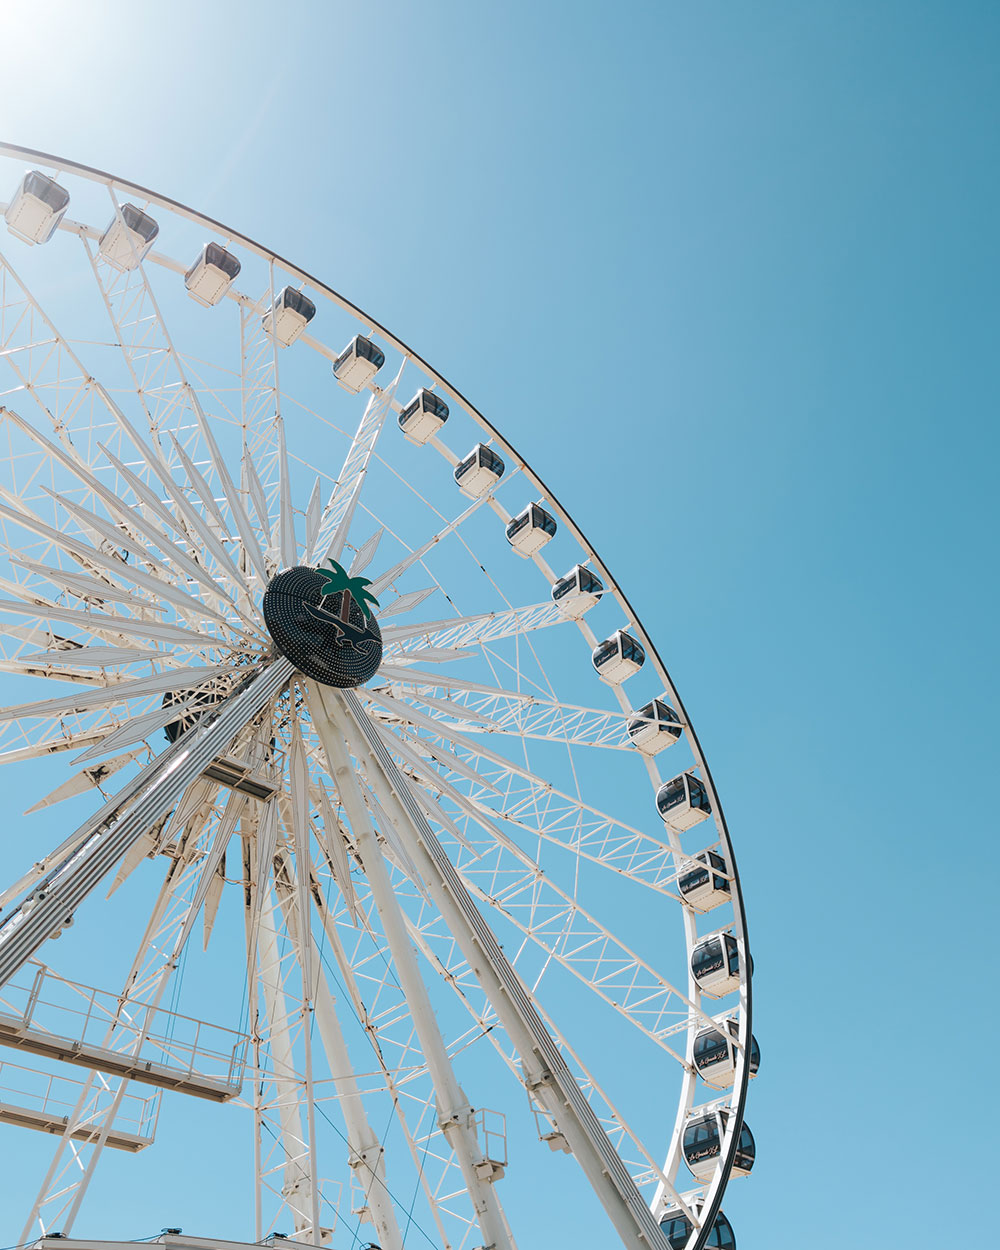 closeup of Coachella ferris wheel against blue sky